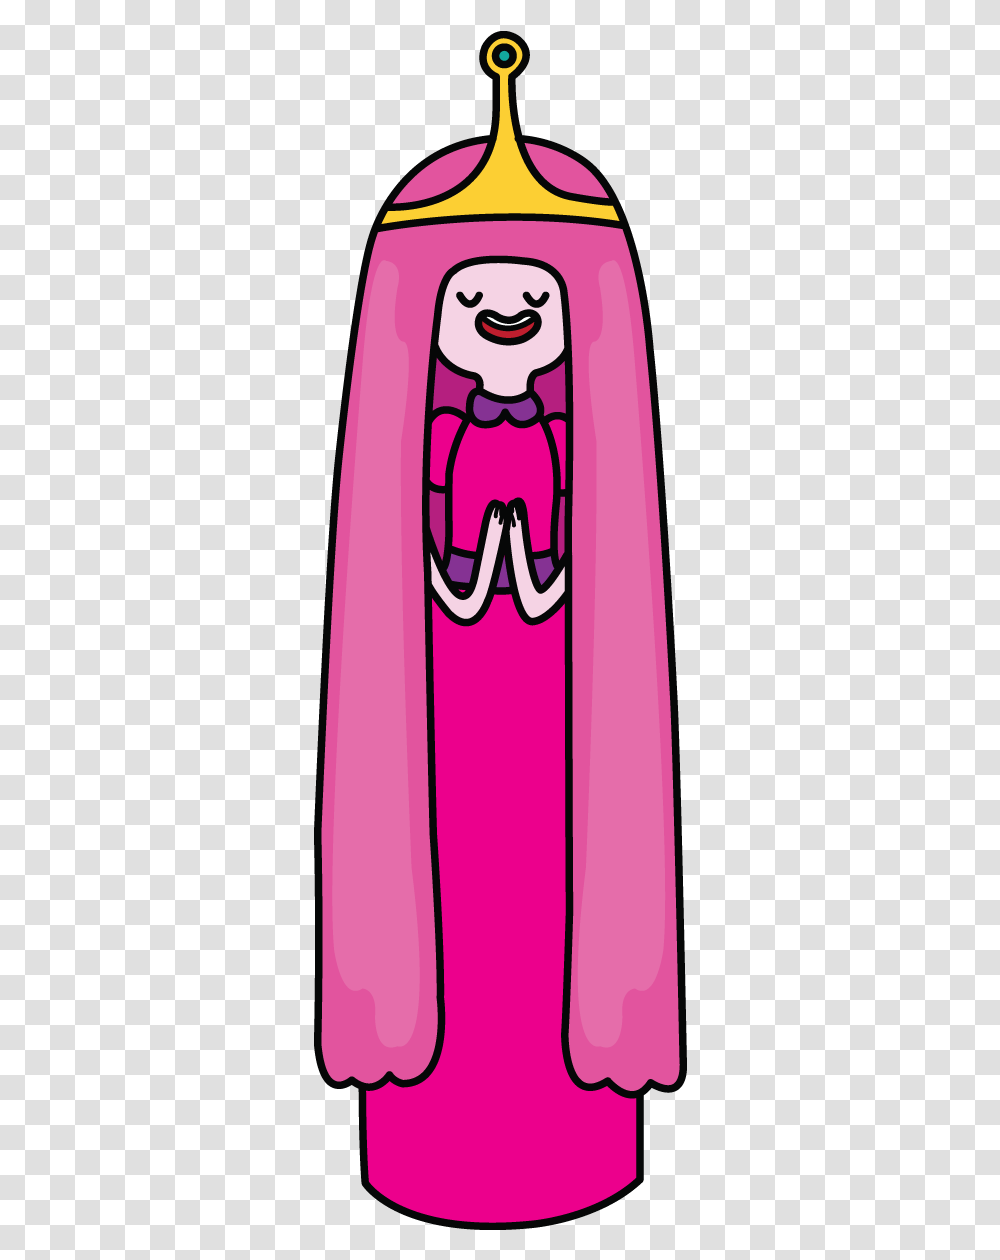 Princess Bubblegum Adventure Time Drawings Of Princess Bubblegum, Cape, Purple, Cloak Transparent Png